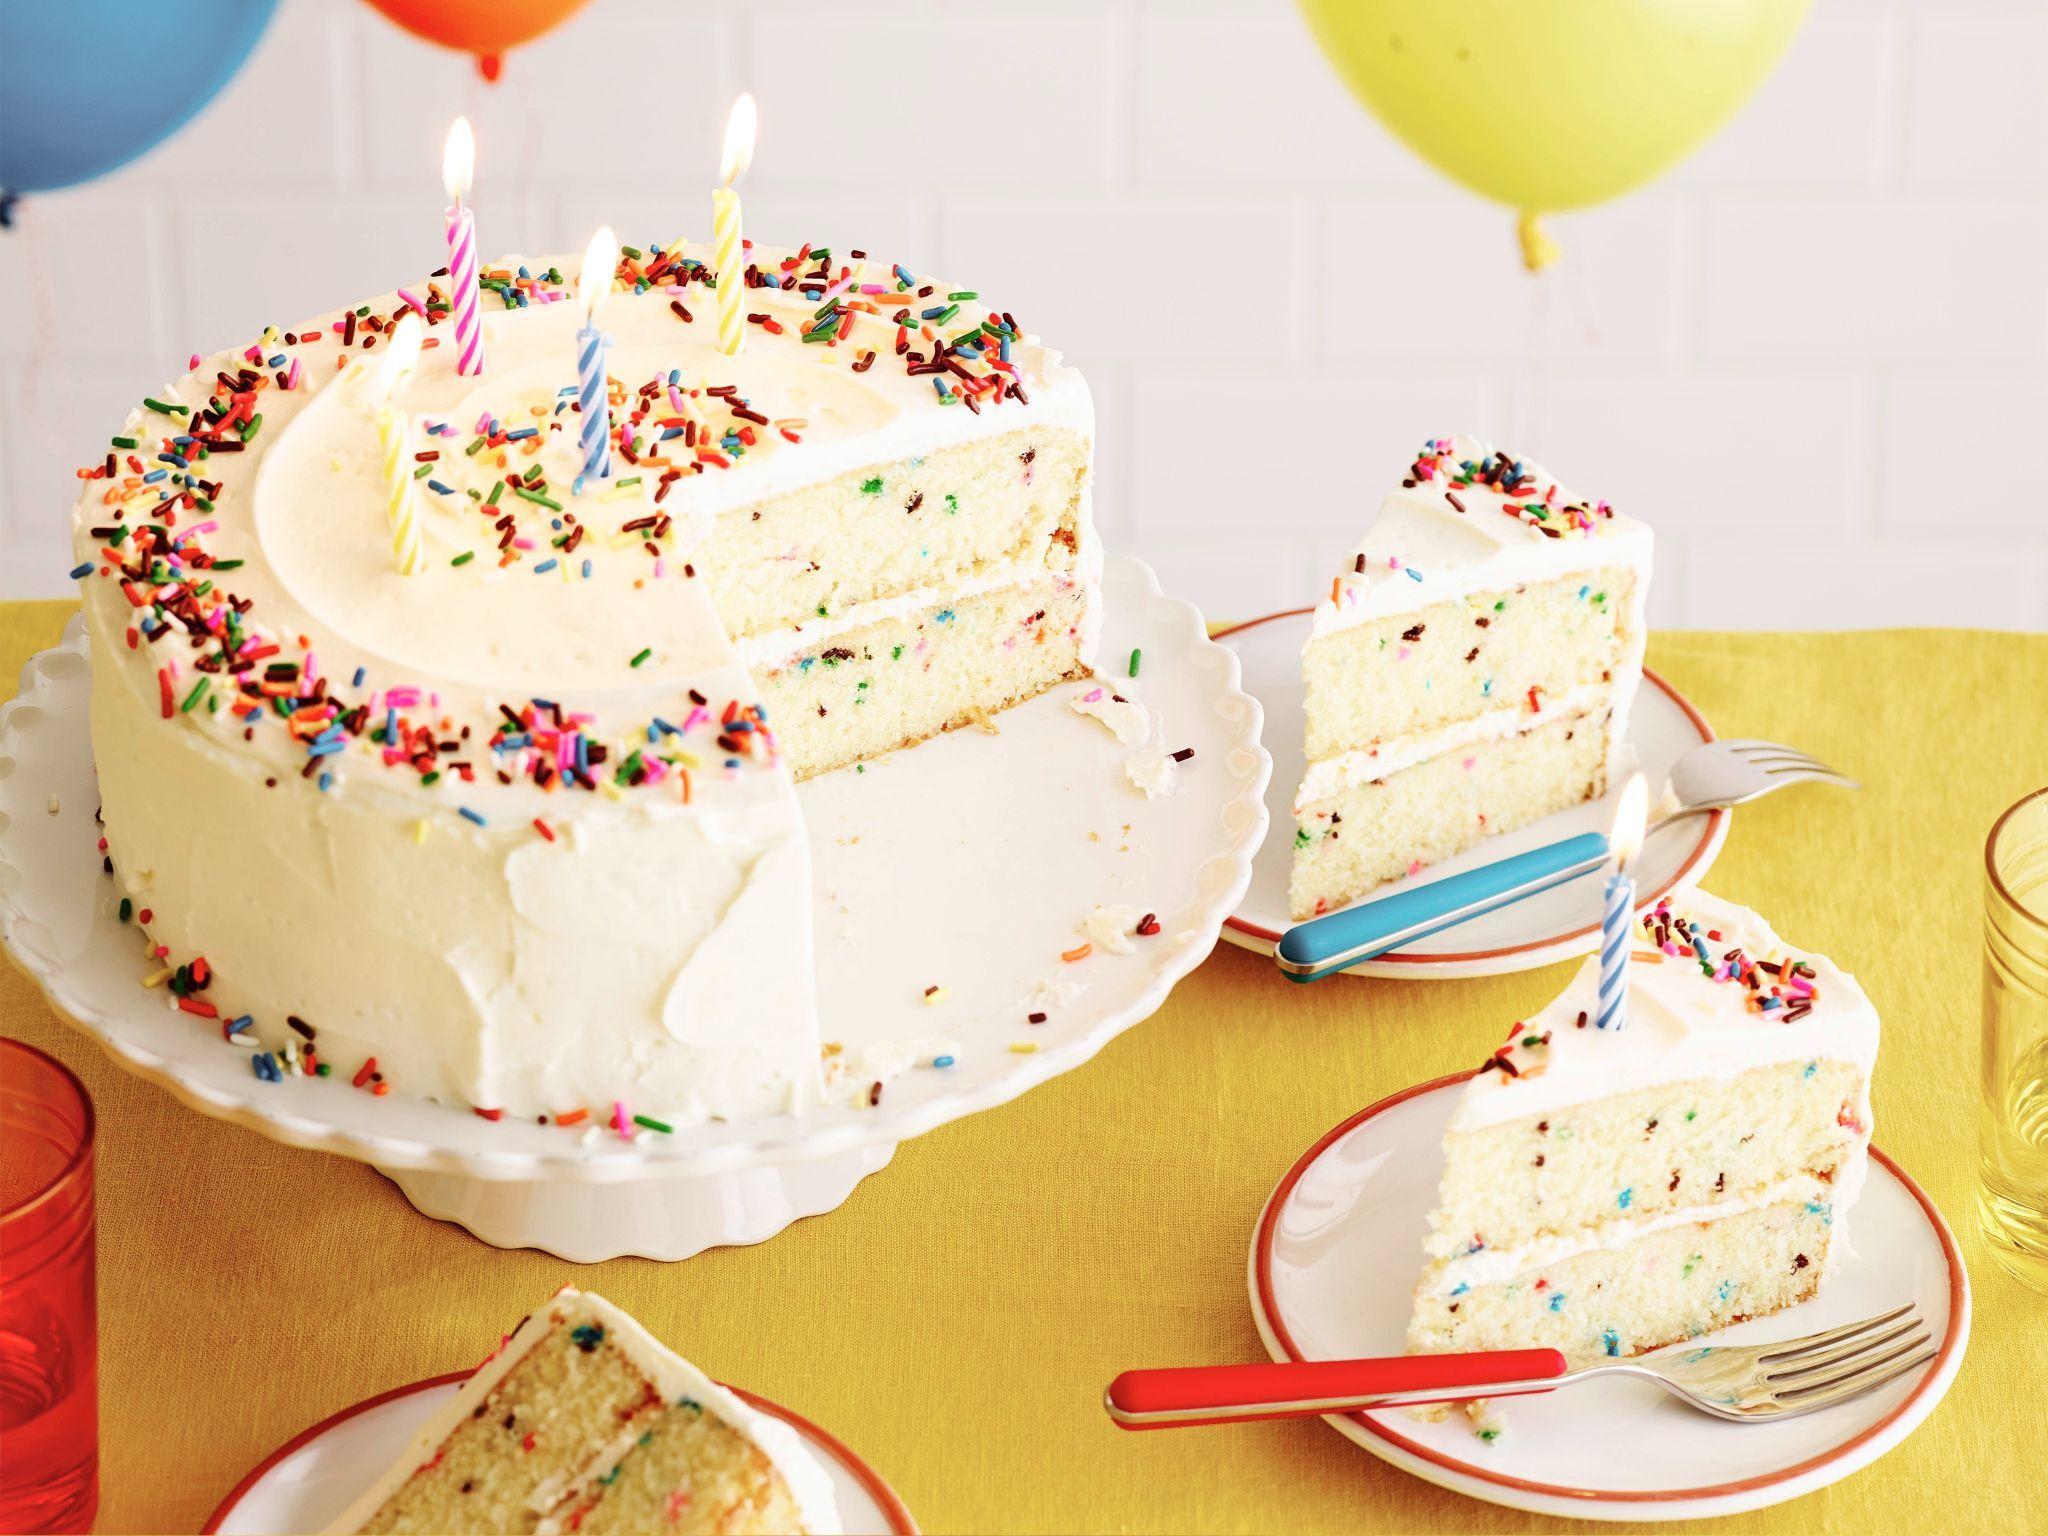 Ảnh bánh sinh nhật - Những hình ảnh bánh sinh nhật đẹp nhất 26